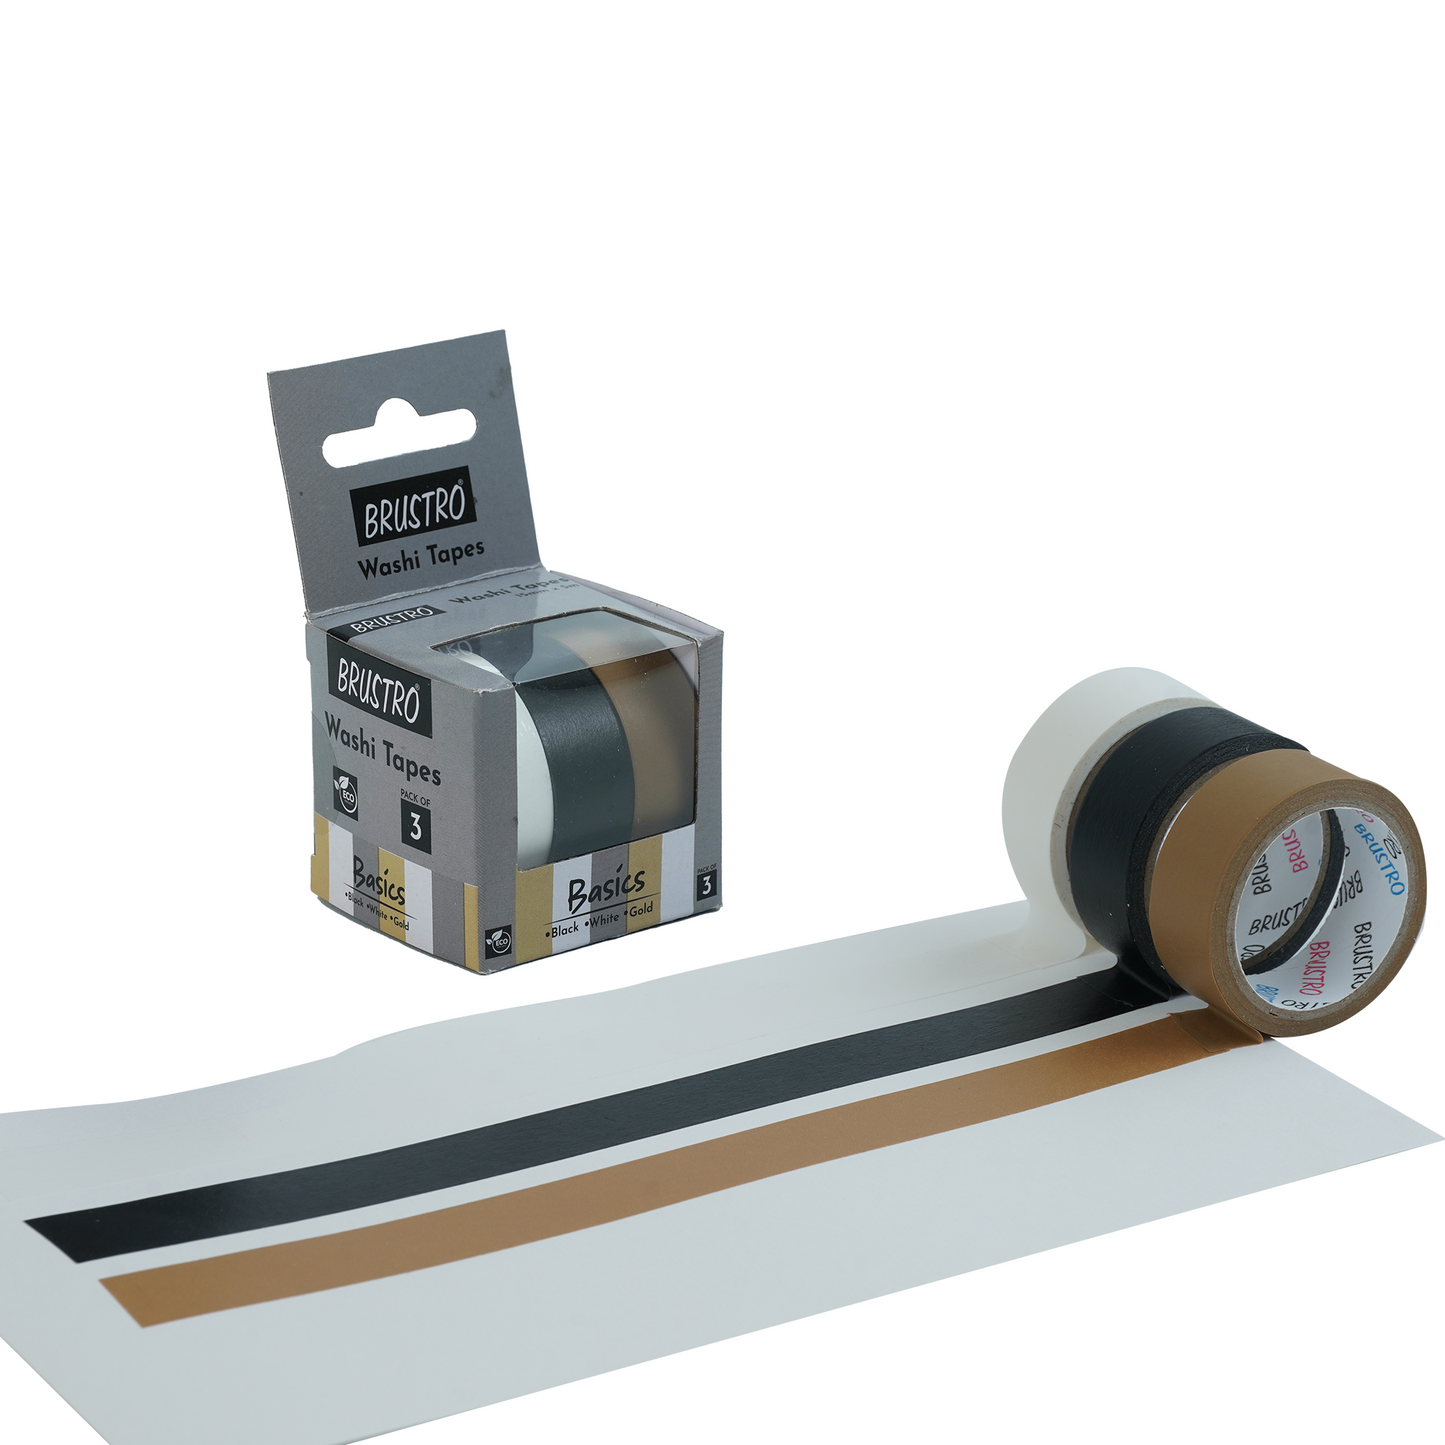 BRUSTRO Washi Tapes Basics Shade, 15 mm x 5 mtrs (set of 3)